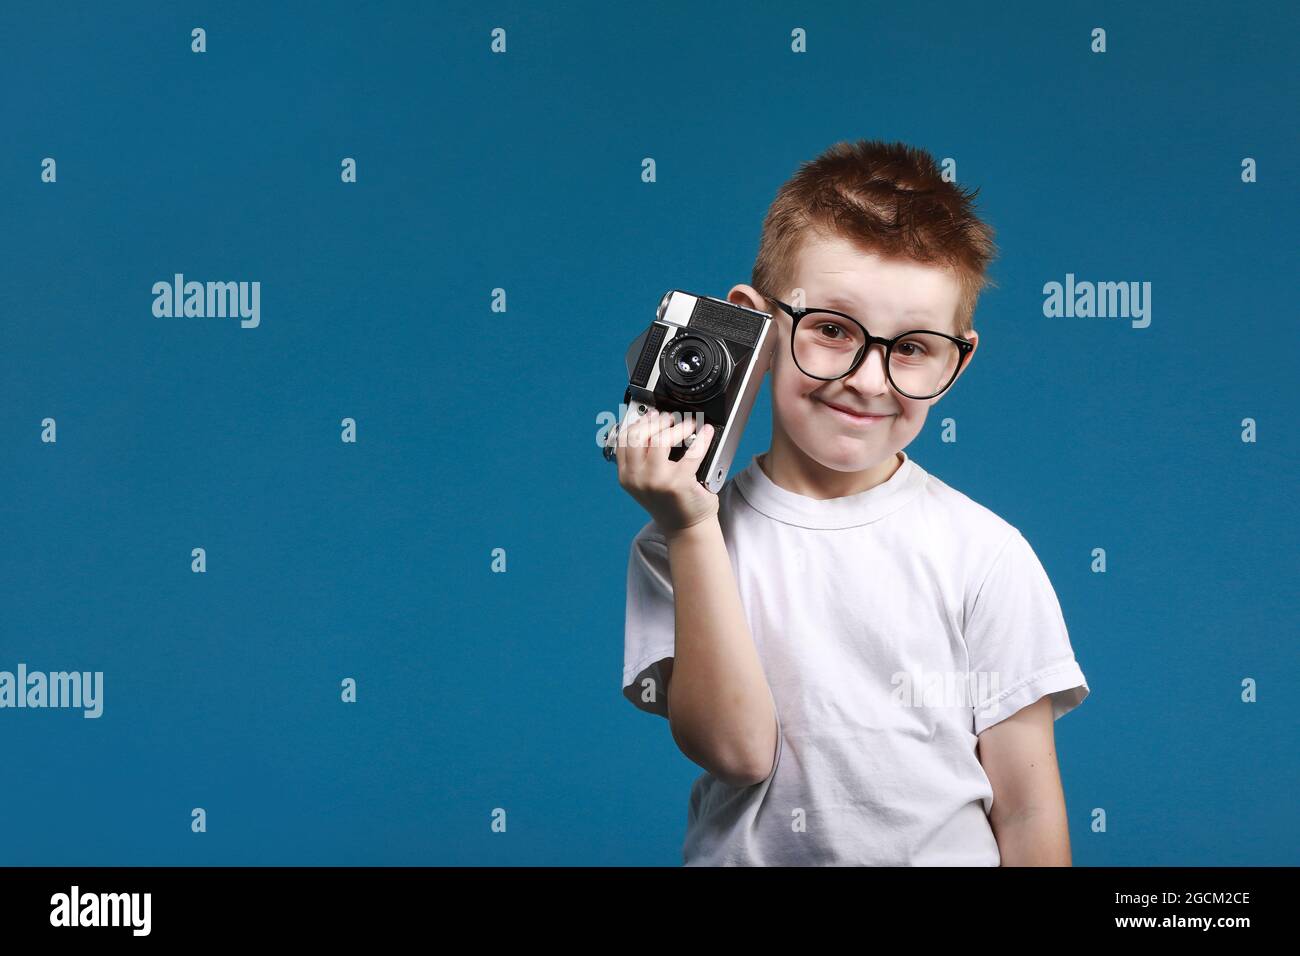 Niño pequeño tomando una foto con una cámara retro. Niño niño con cámara  fotográfica vintage aislada sobre fondo azul. Antiguo concepto tecnológico  con espacio de copia. Fotografía de aprendizaje infantil Fotografía de